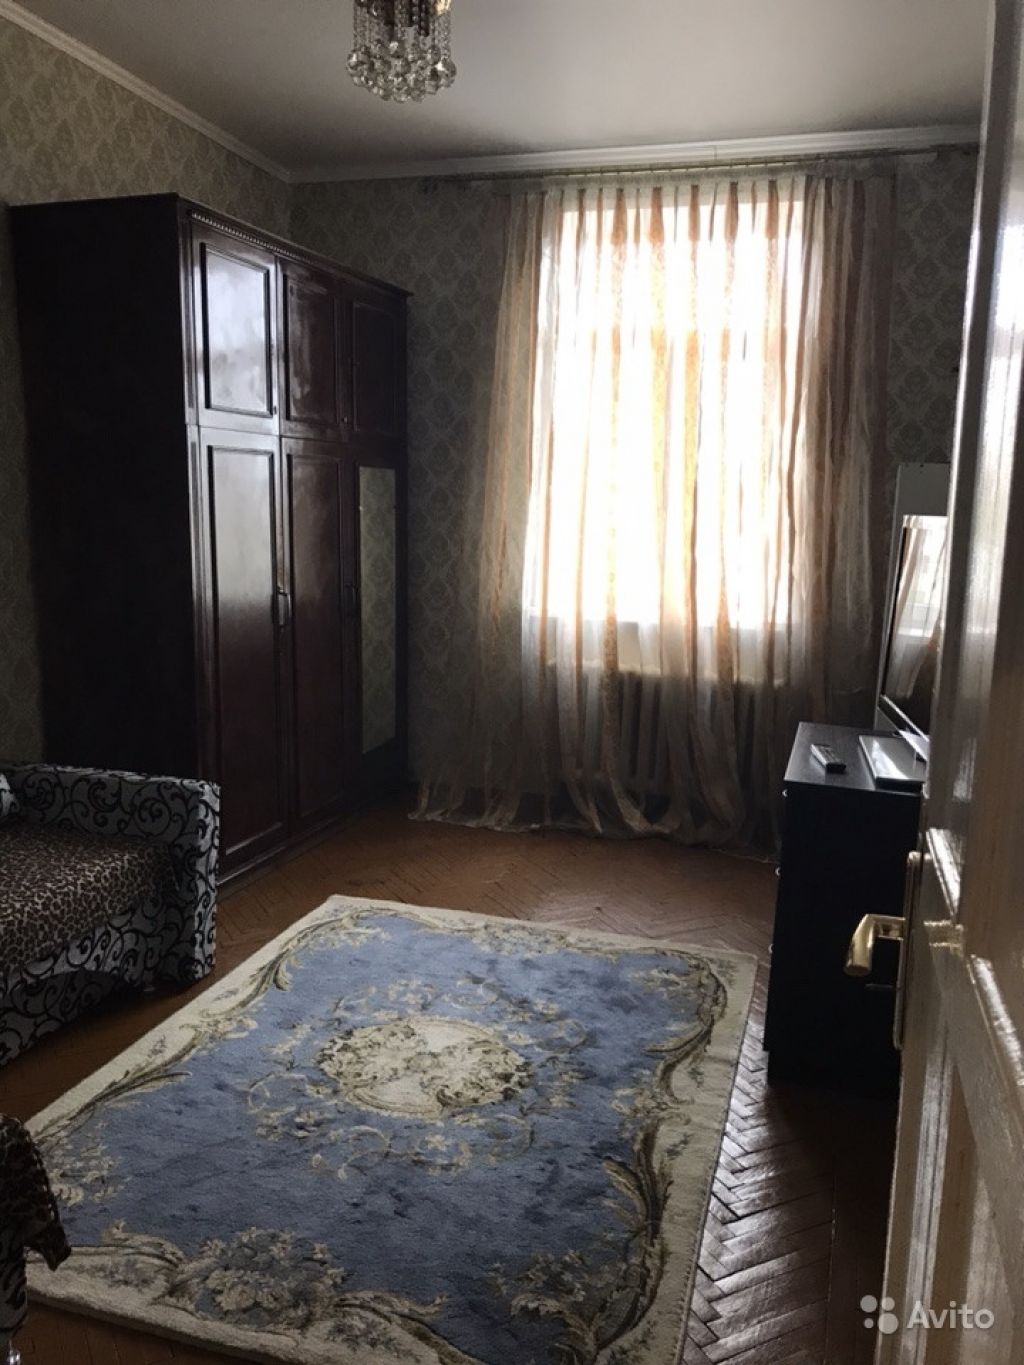 Сдам комнату Комната 15 м² в 2-к квартире на 5 этаже 7-этажного кирпичного дома в Москве. Фото 1